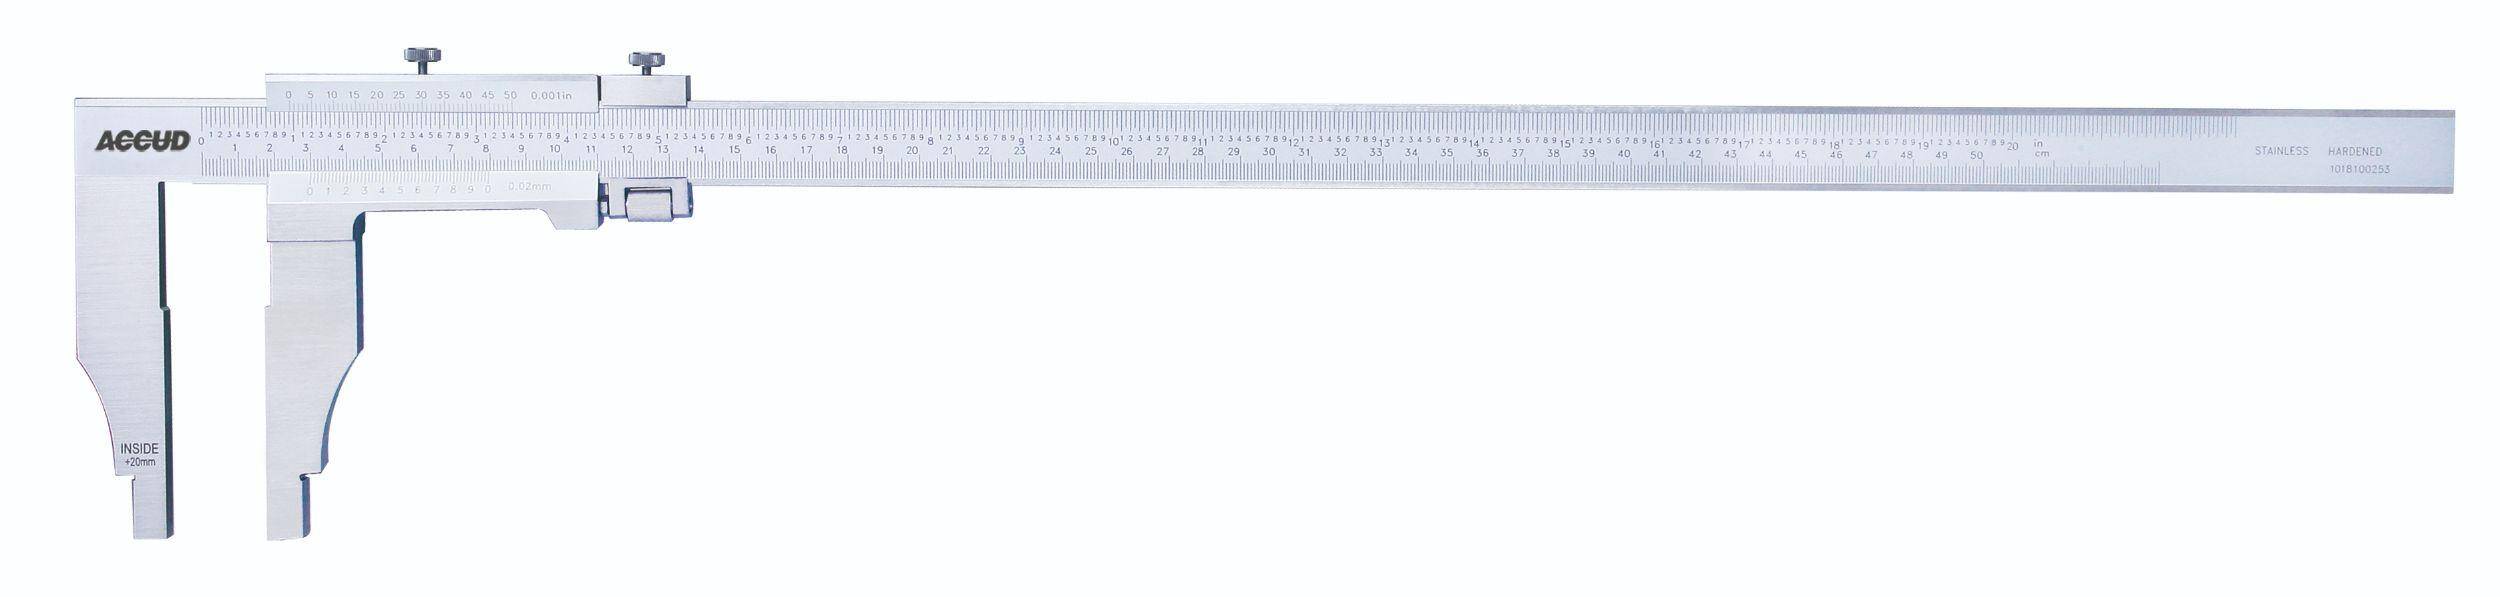 ACCUD suwmiarka analogowa 600/0,05 mm jednostronna długość szczęk 150 mm 128-024-52 (Zdjęcie 1)